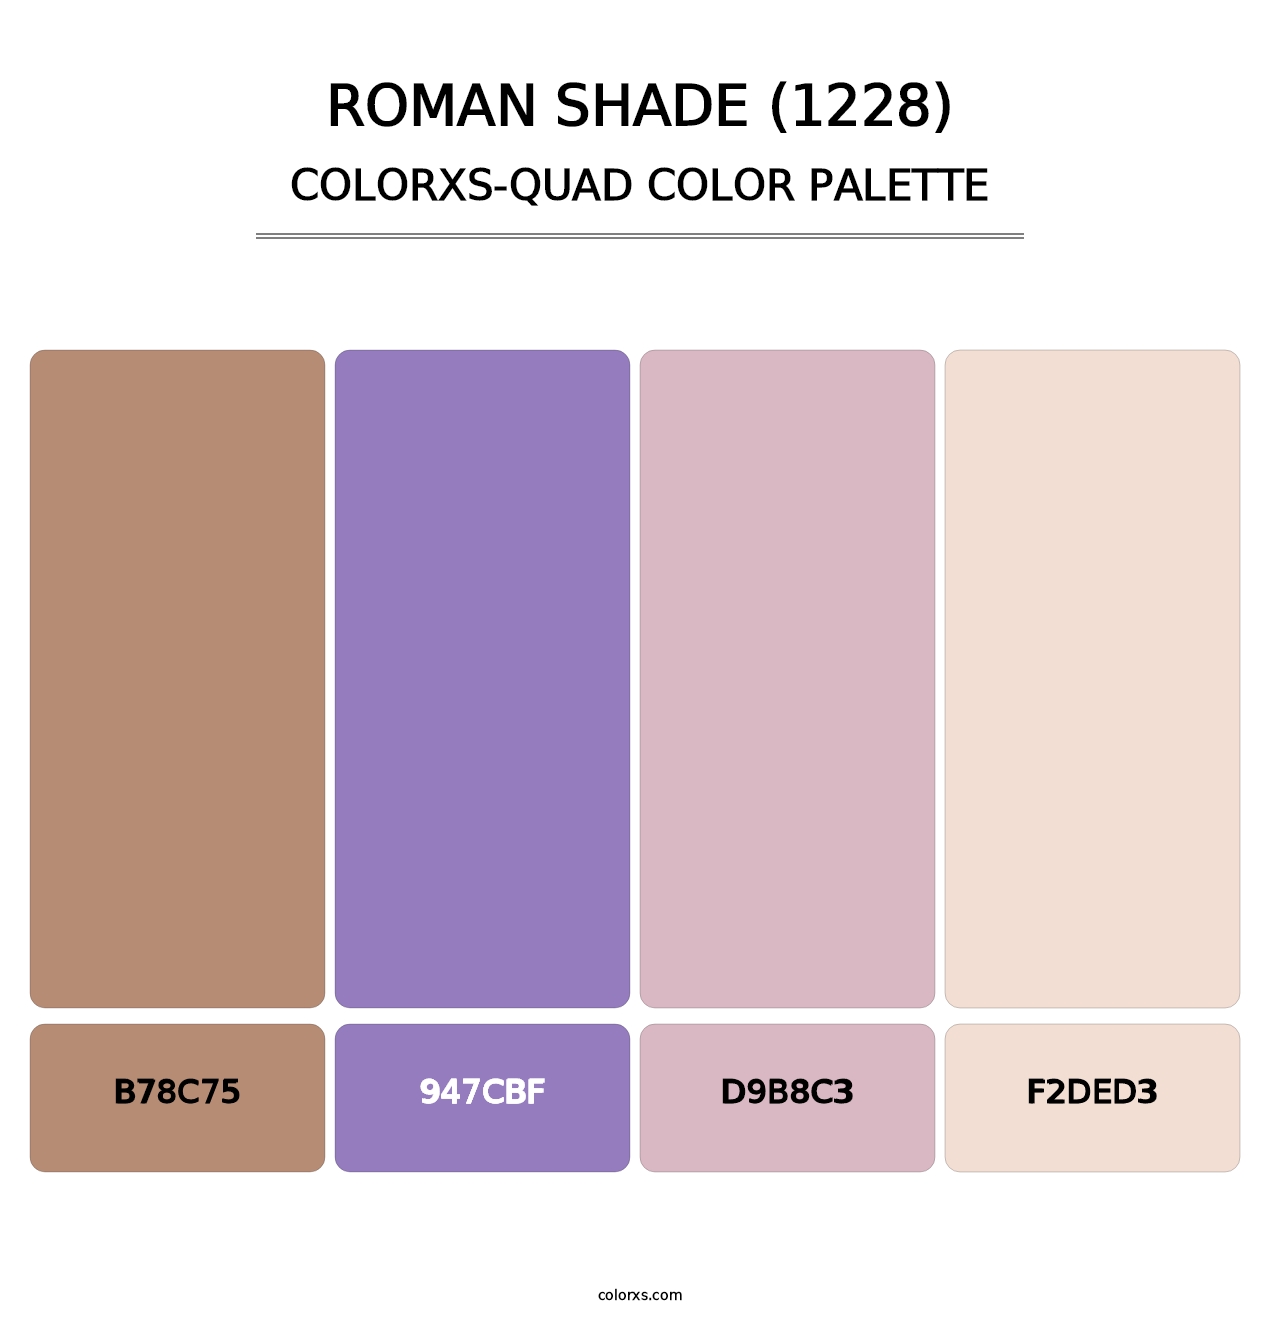 Roman Shade (1228) - Colorxs Quad Palette